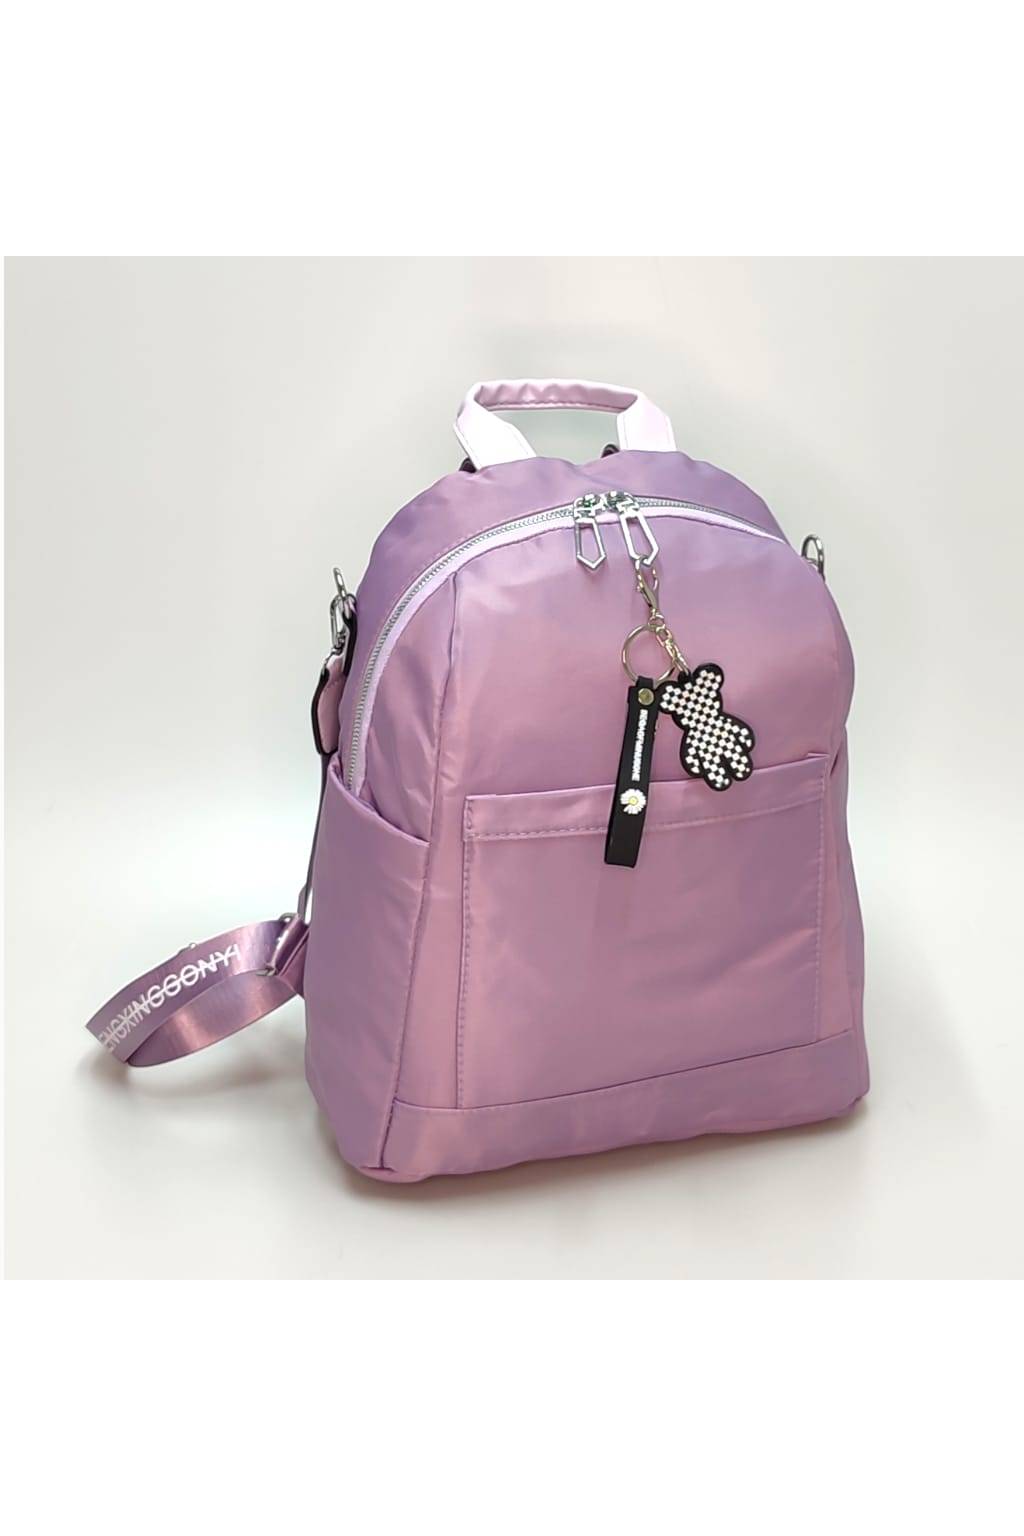 Dámsky ruksak 2v1 3060 svetlo fialový www.kabelky vypredaj (12)